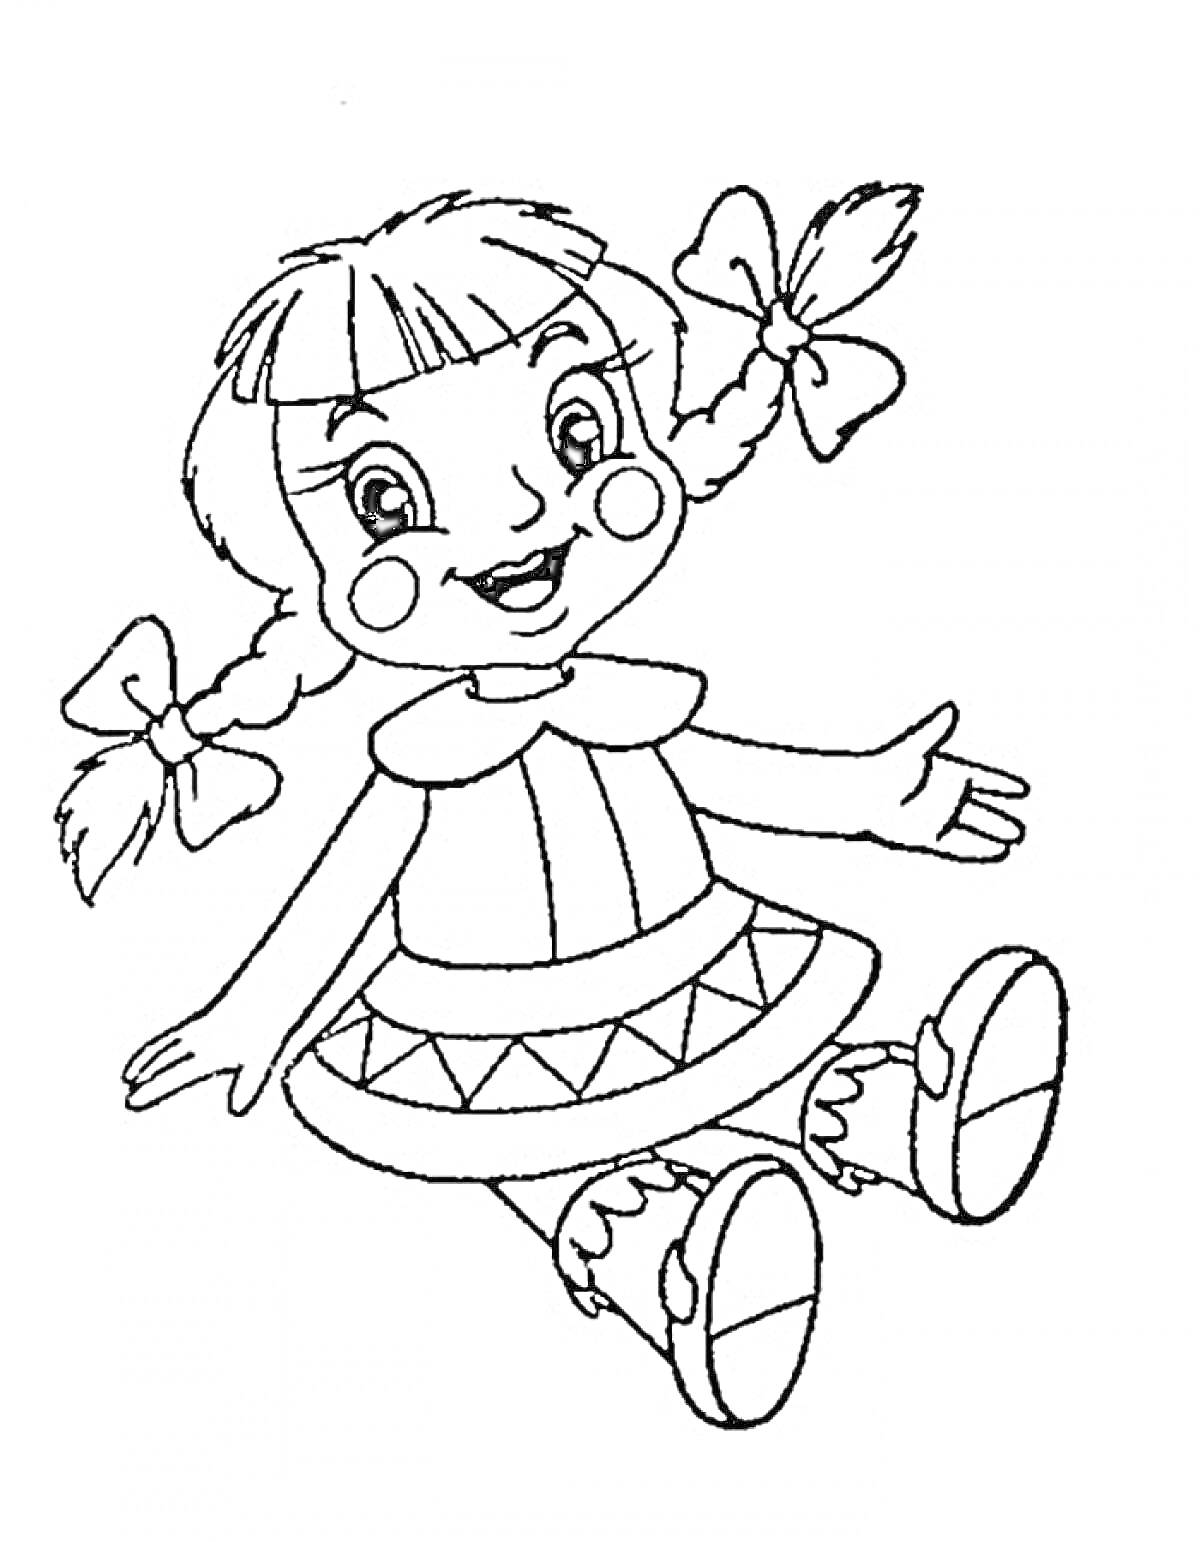 Раскраска Кукла с косичками и бантами в платье и ботинках, с рисунком на юбке.